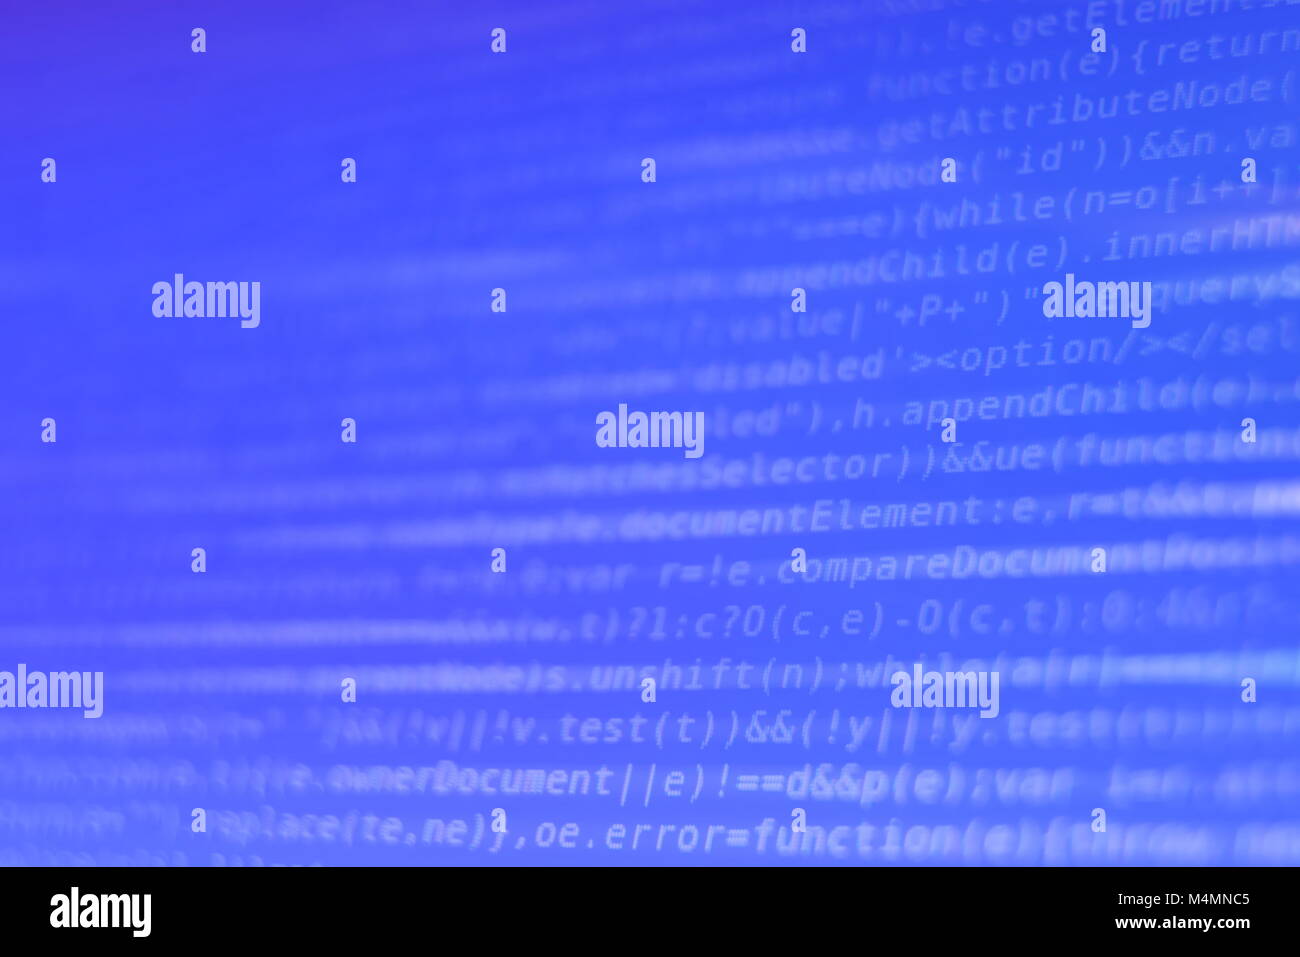 Weiß Programm Source Code Segment auf blauen Bildschirm Closeup Stockfoto